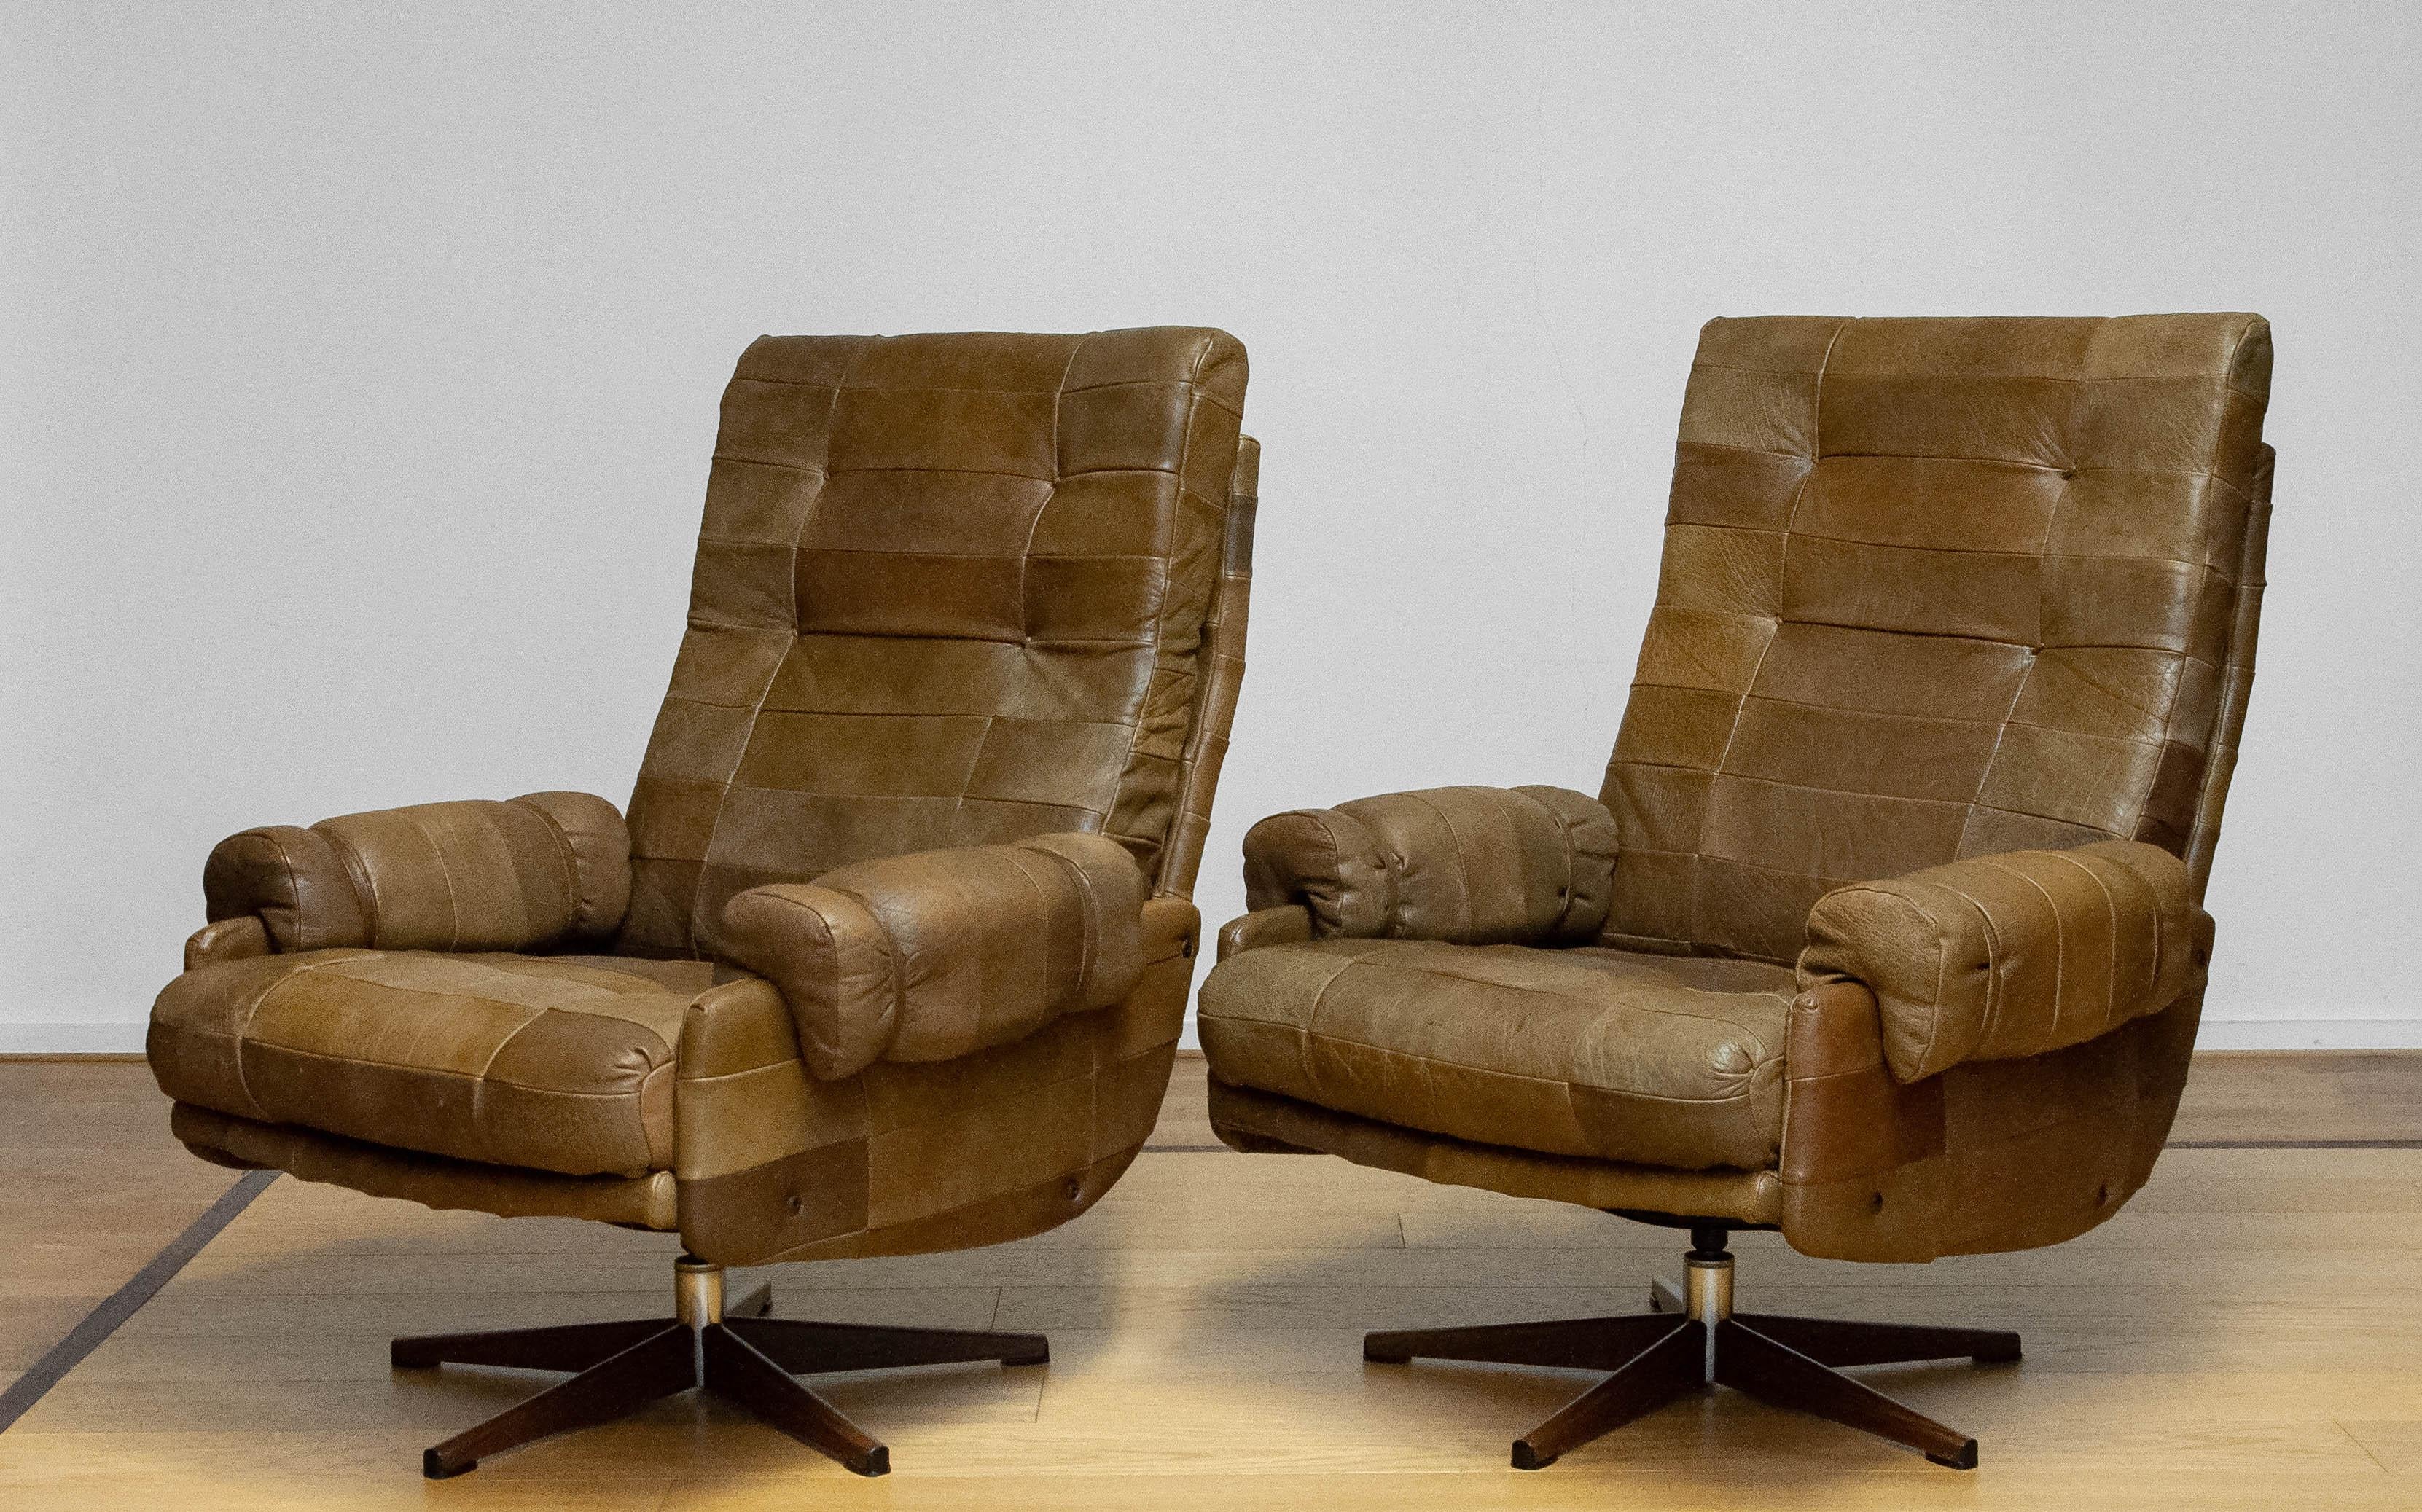 Paire de fauteuils pivotants extrêmement confortables d'Arne Norell pour Norell Möbler AB en Suède, datant des années 1970. Les chaises sont recouvertes d'un magnifique et robuste cuir de buffle vert olive (patchwork). Les chaises supportent très